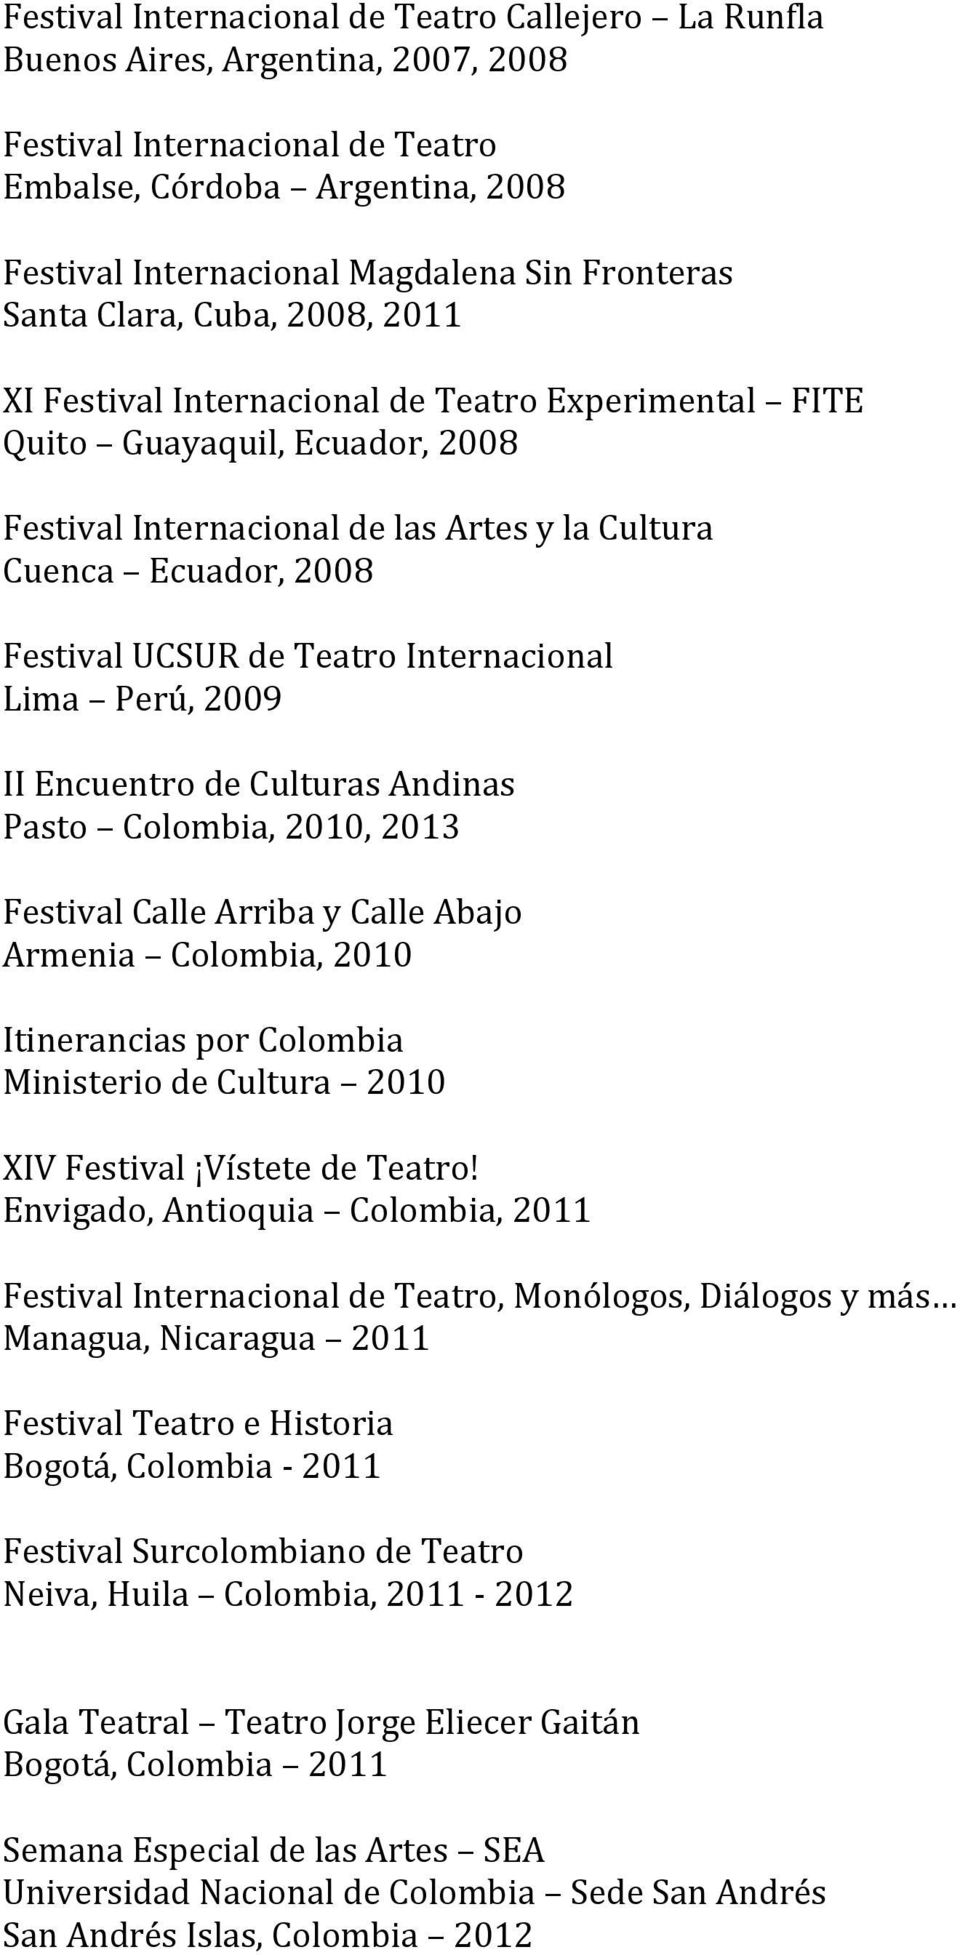 Festival UCSUR de Teatro Internacional Lima Perú, 2009 II Encuentro de Culturas Andinas Pasto Colombia, 2010, 2013 Festival Calle Arriba y Calle Abajo Armenia Colombia, 2010 Itinerancias por Colombia